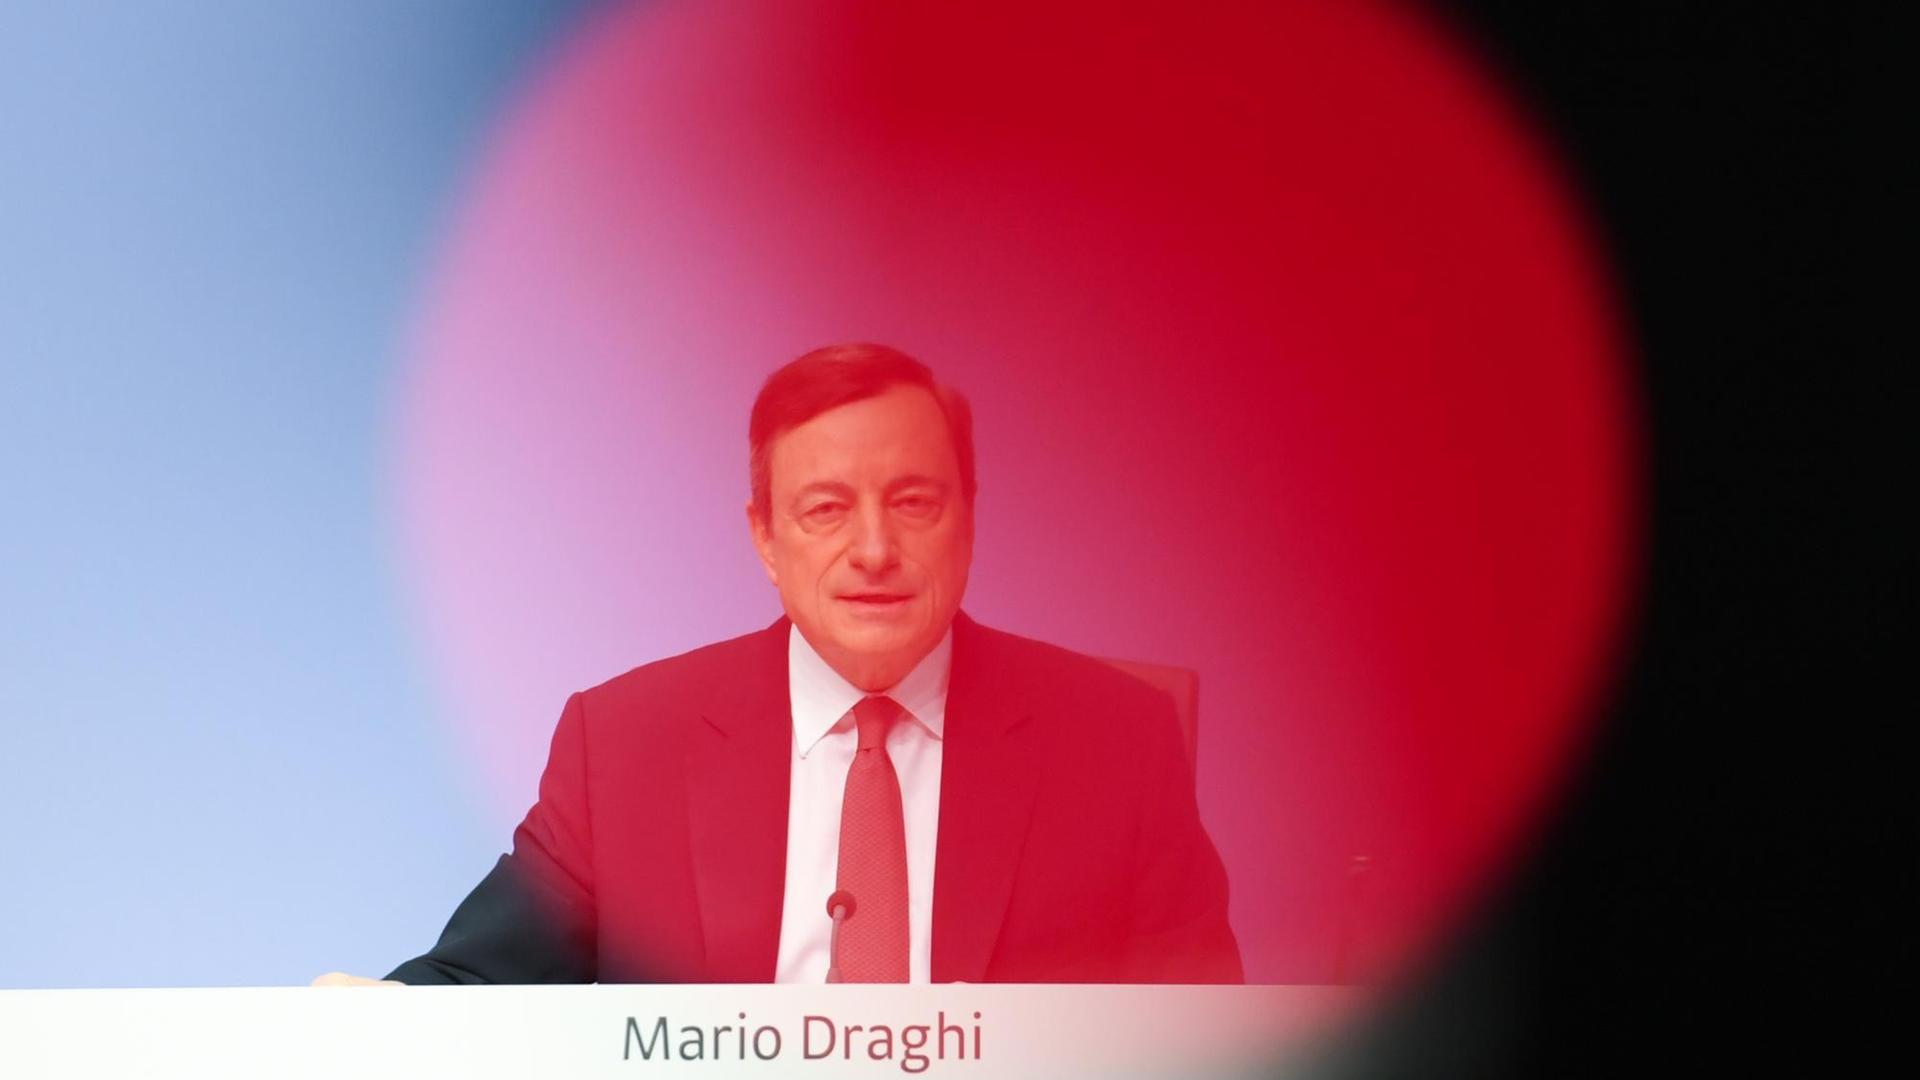 Mario Draghi, Präsident der Europäischen Zentralbank (EZB), spricht am 21.04.2016 während der EZB-Pressekonferenz in Frankfurt am Main (Hessen).